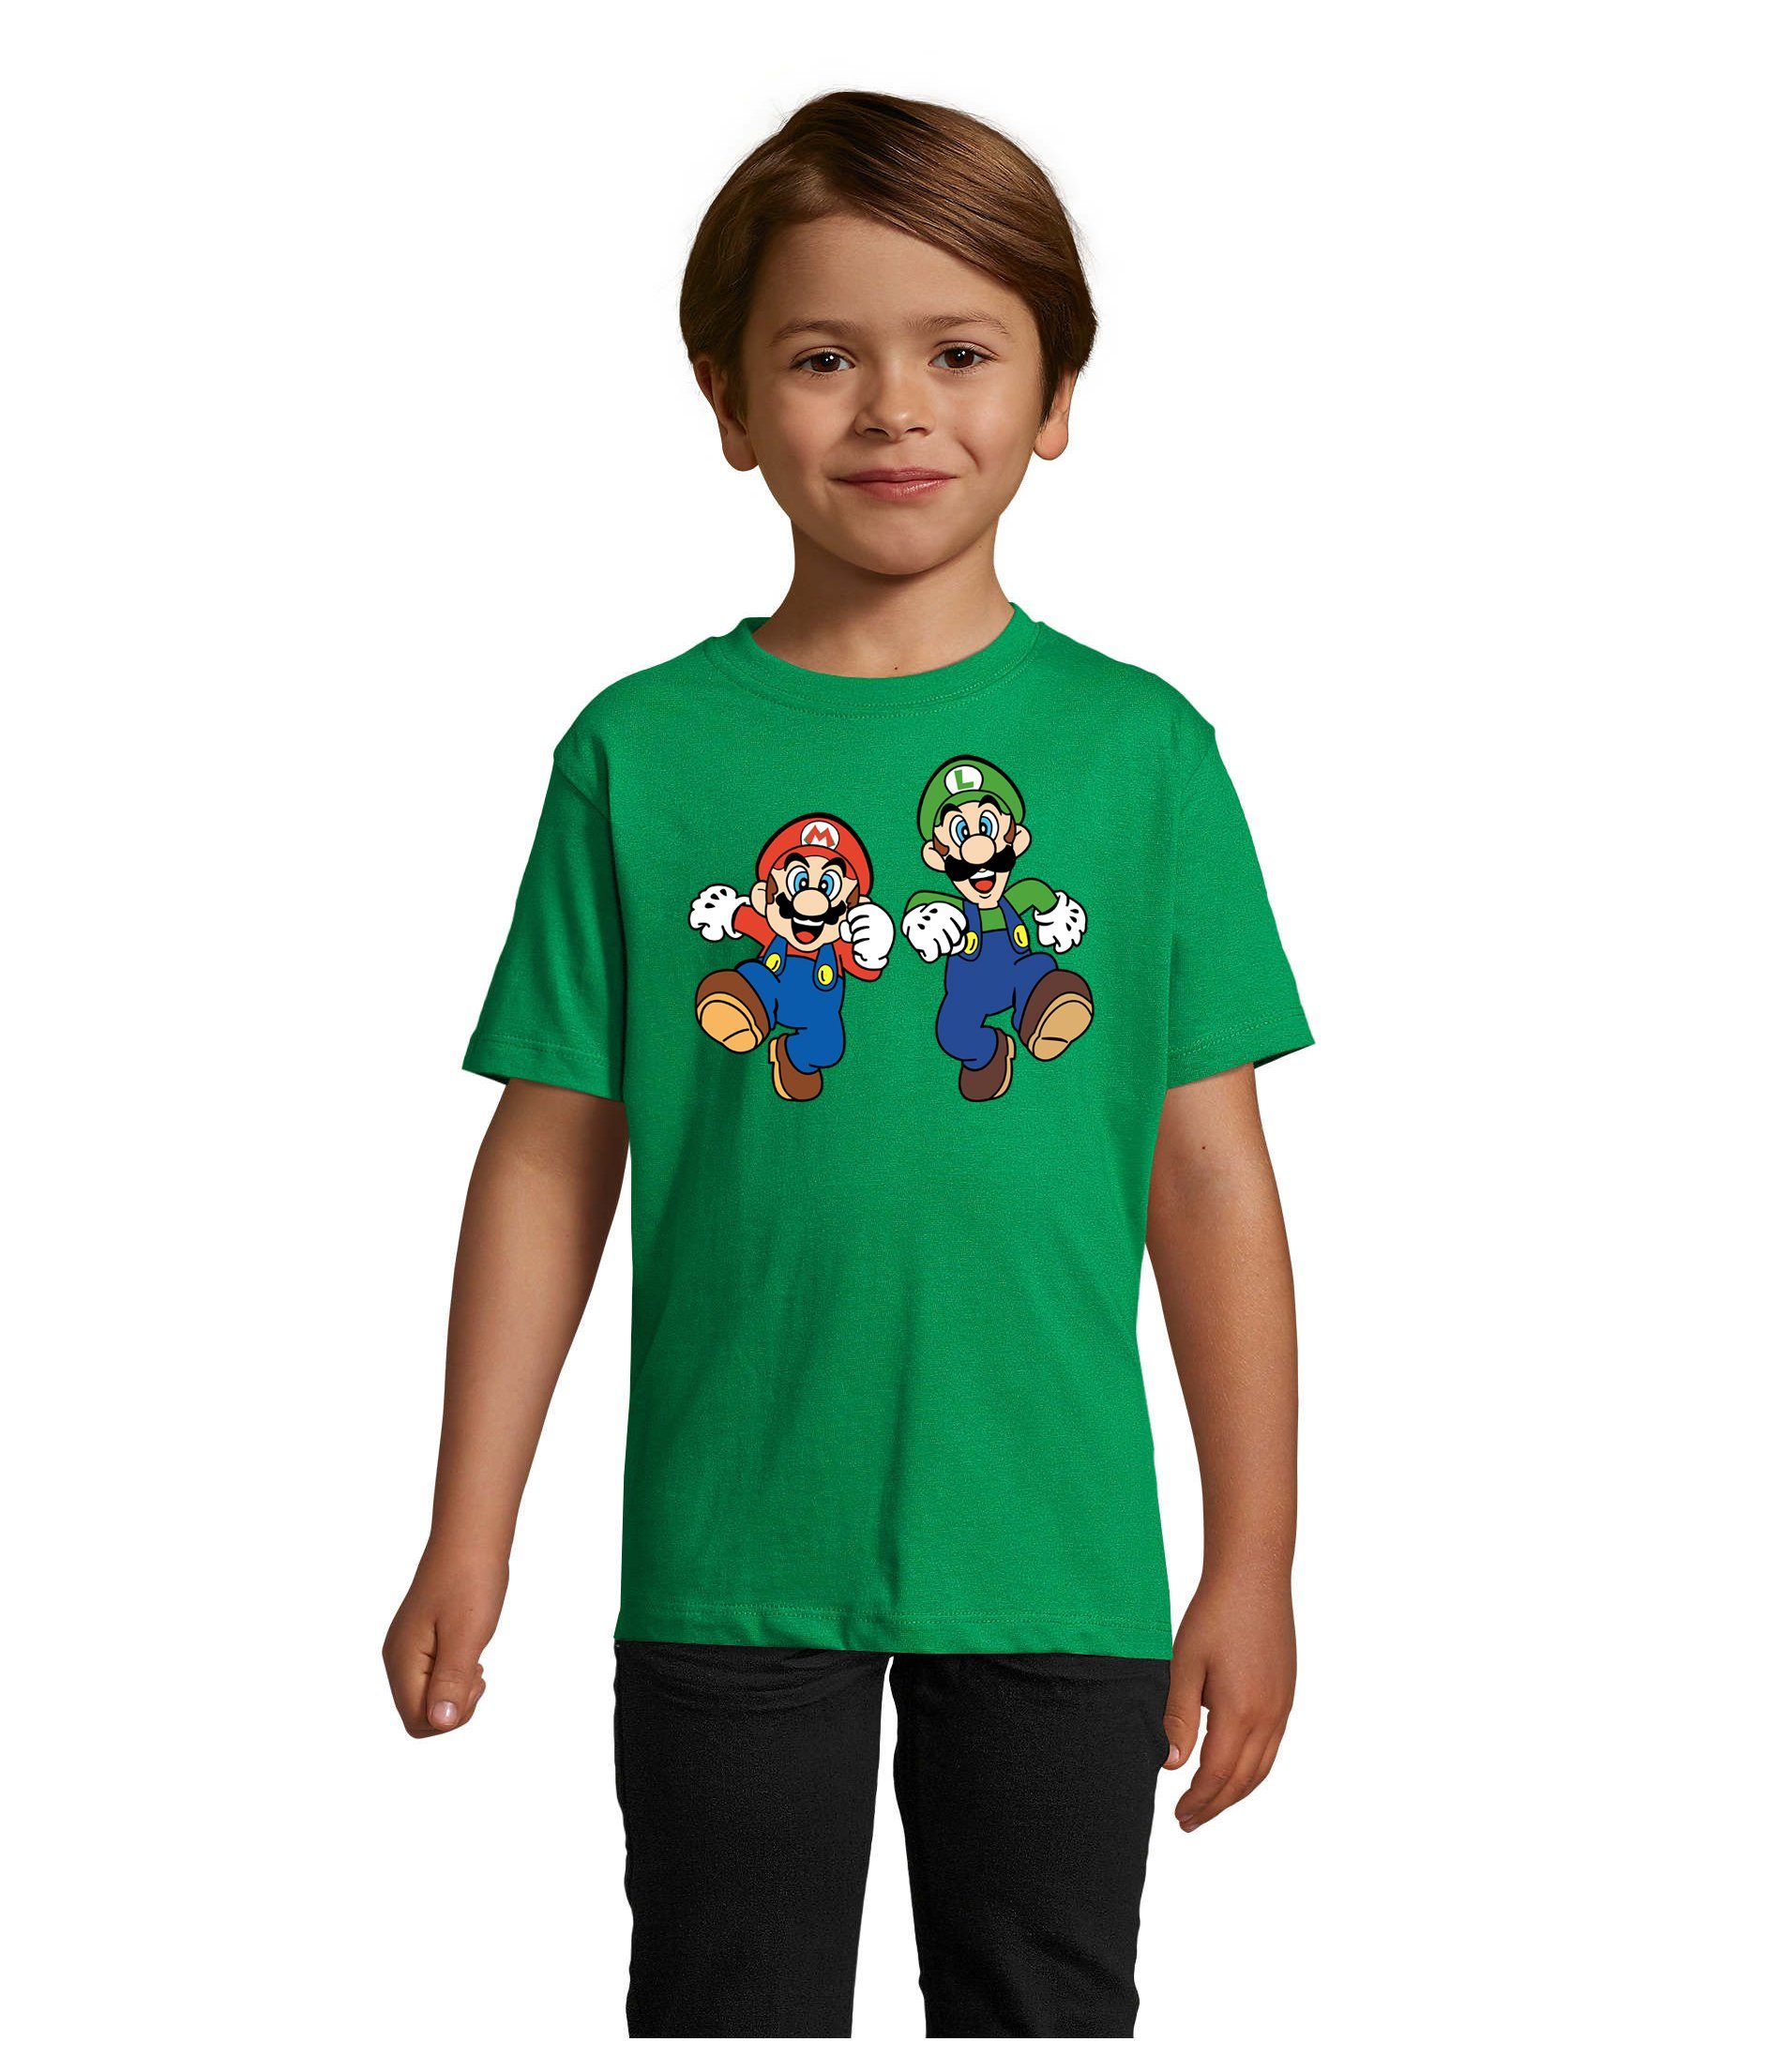 Blondie & Brownie T-Shirt Kinder Mario & Luigi Bowser Nintendo Yoshi Game Gamer Konsole Grün